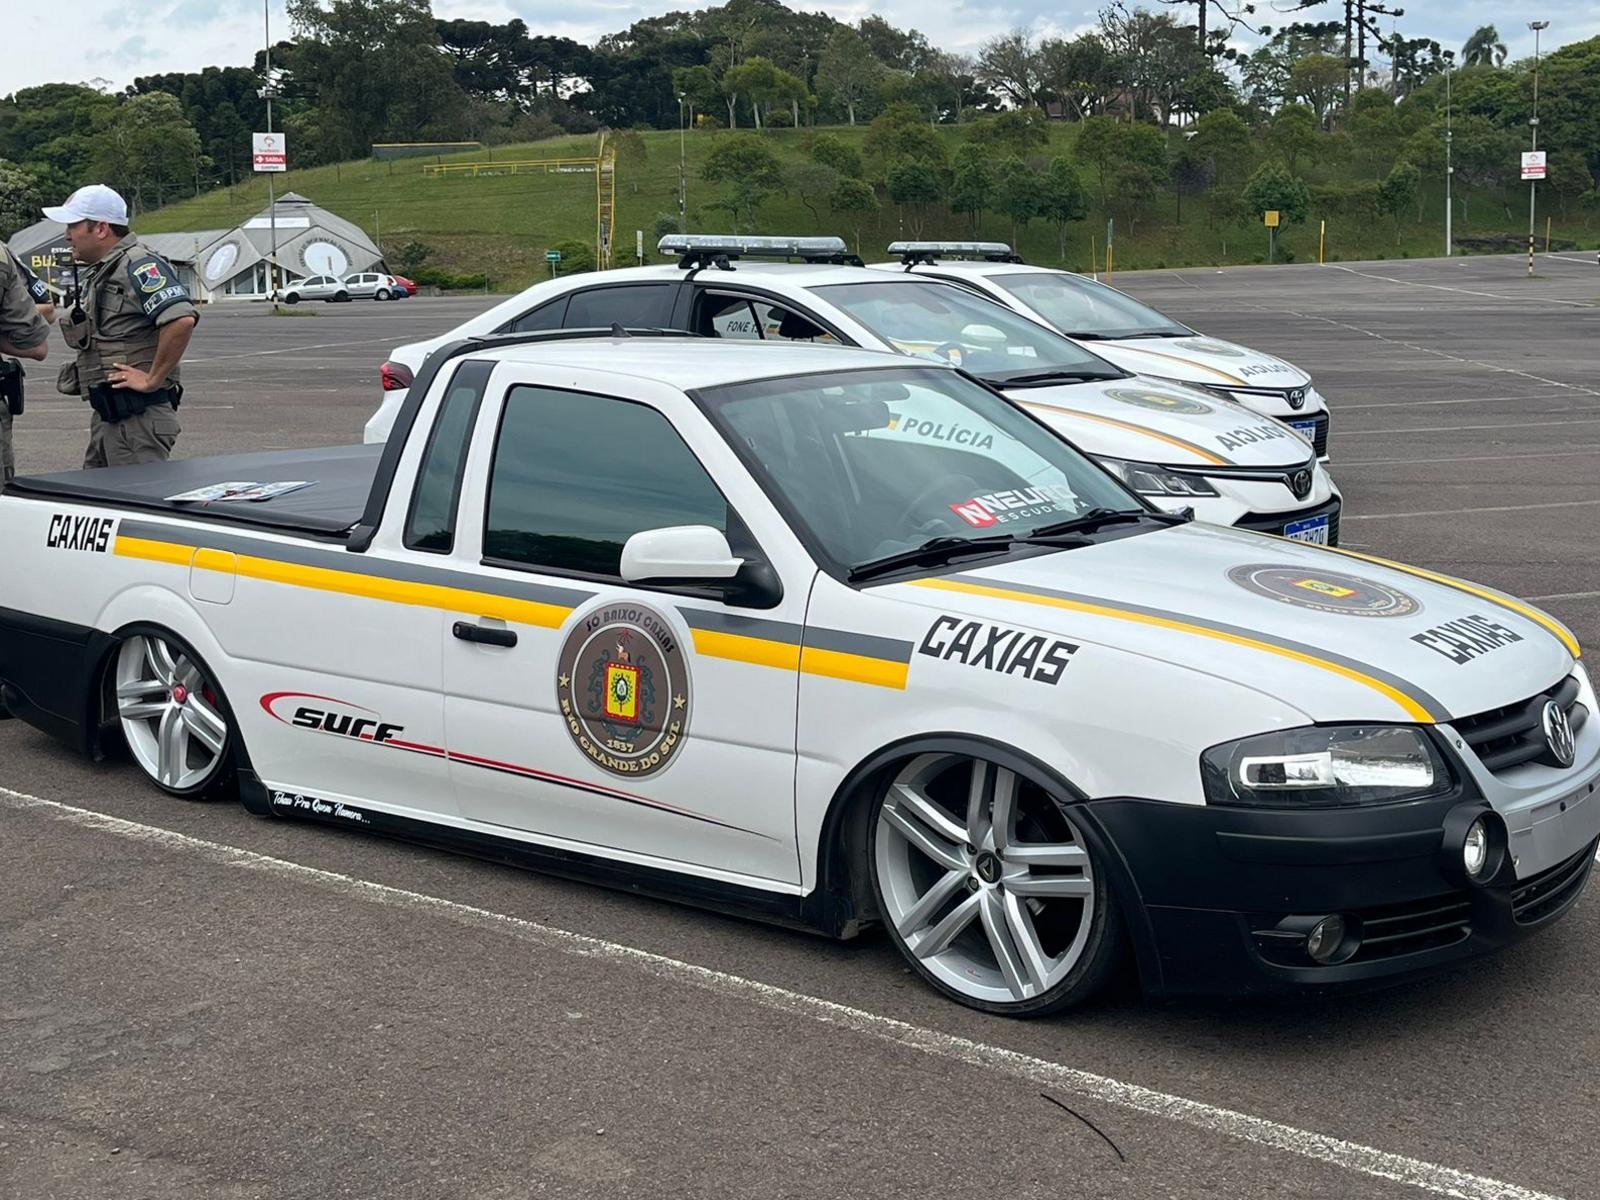 VW Saveiro rebaixada com pintura da PRF é apreendida em operação no Sul